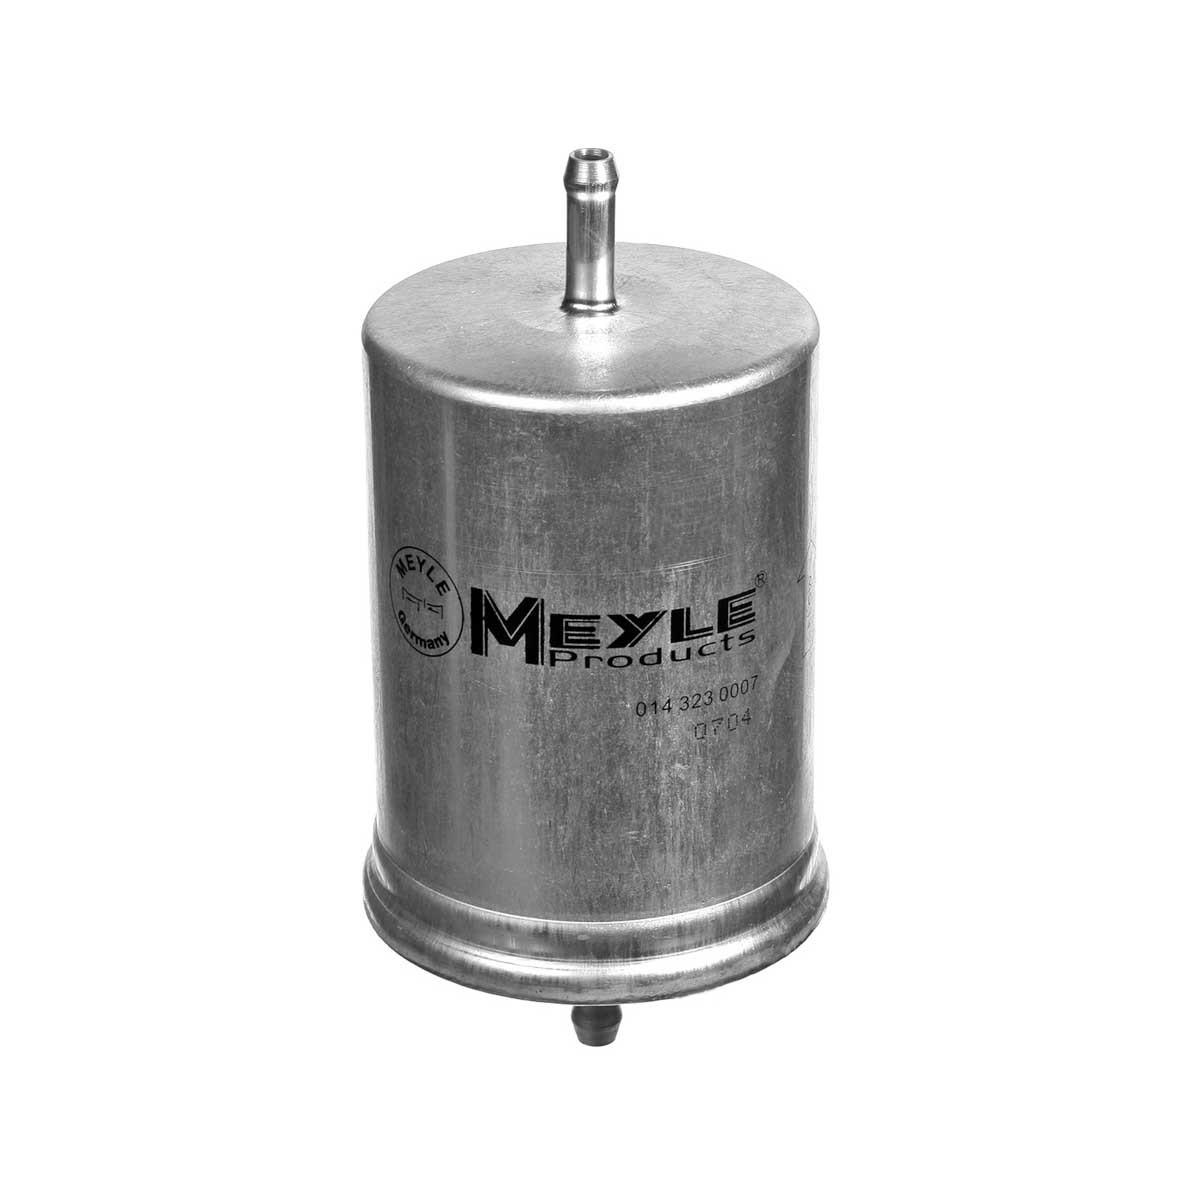 Original MEYLE MFF0017 Fuel filter 014 323 0007 for VW LT